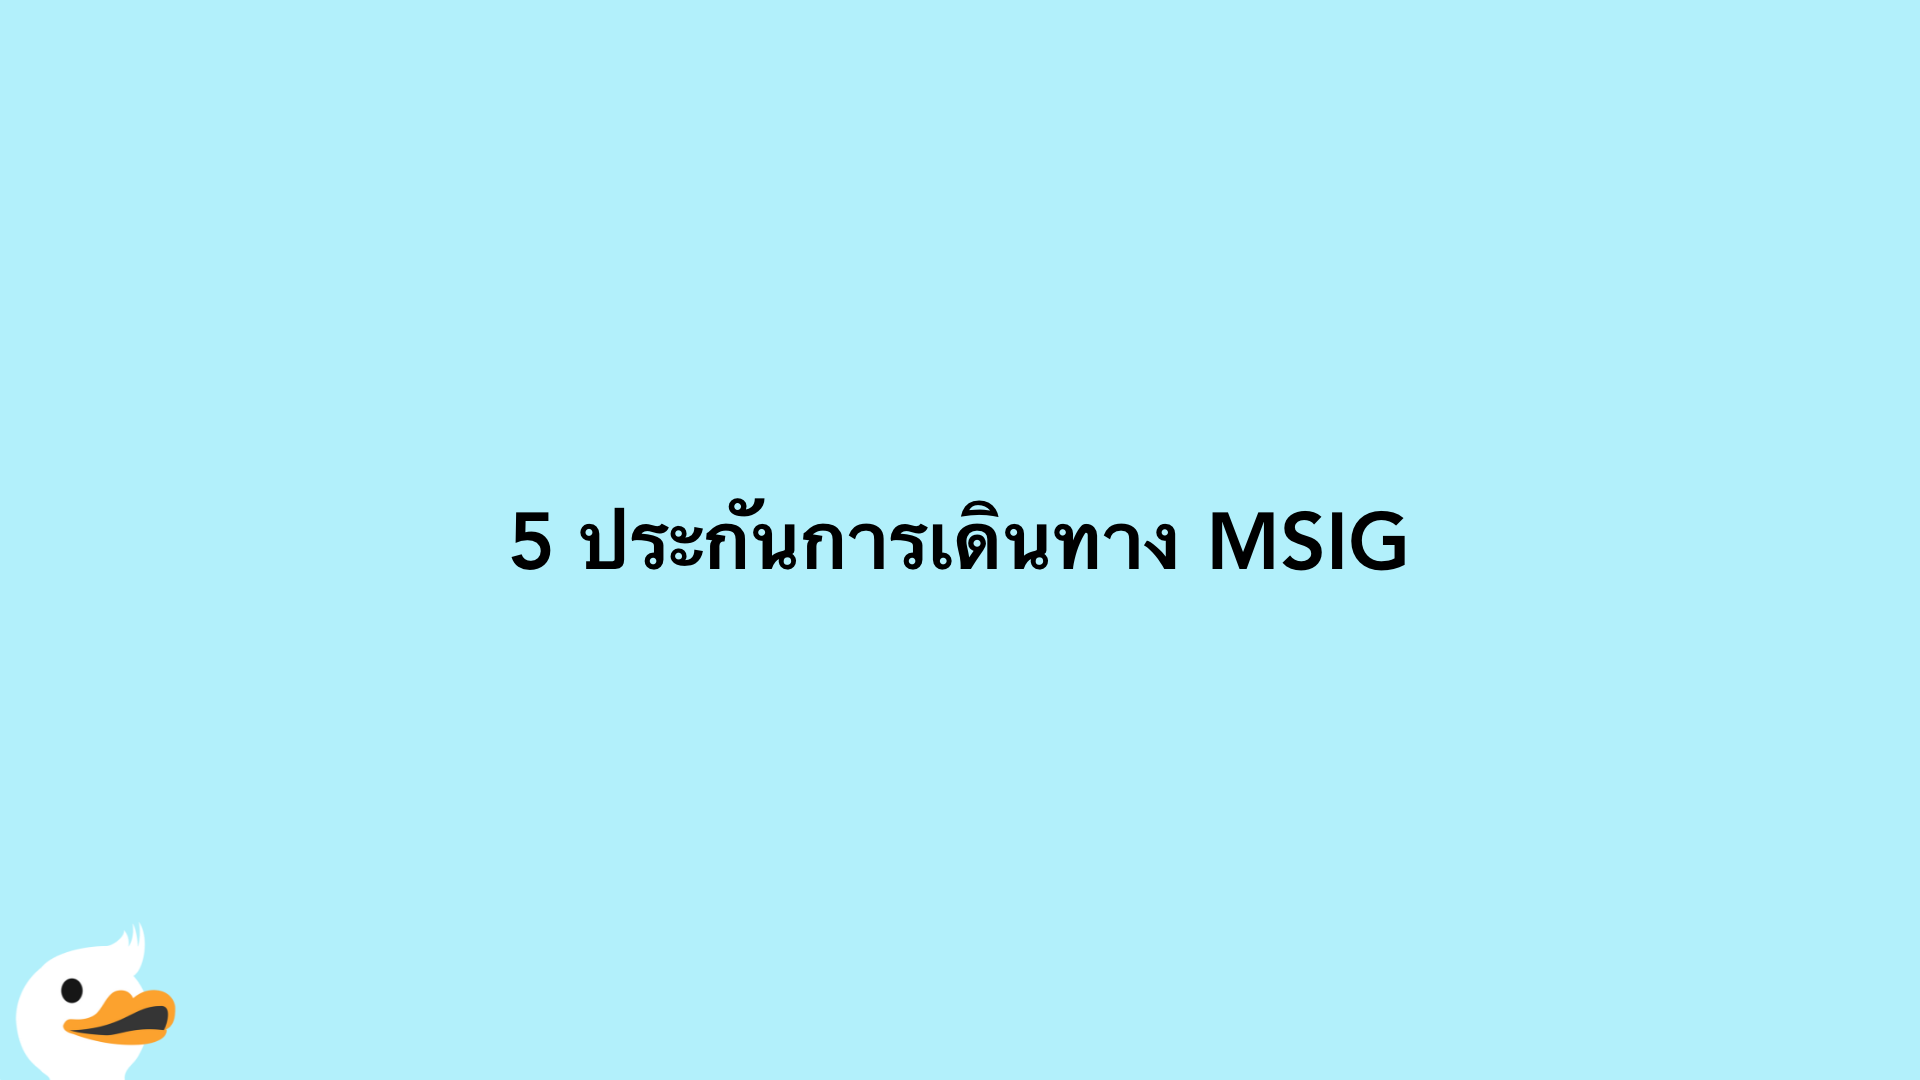 5 ประกันการเดินทาง MSIG